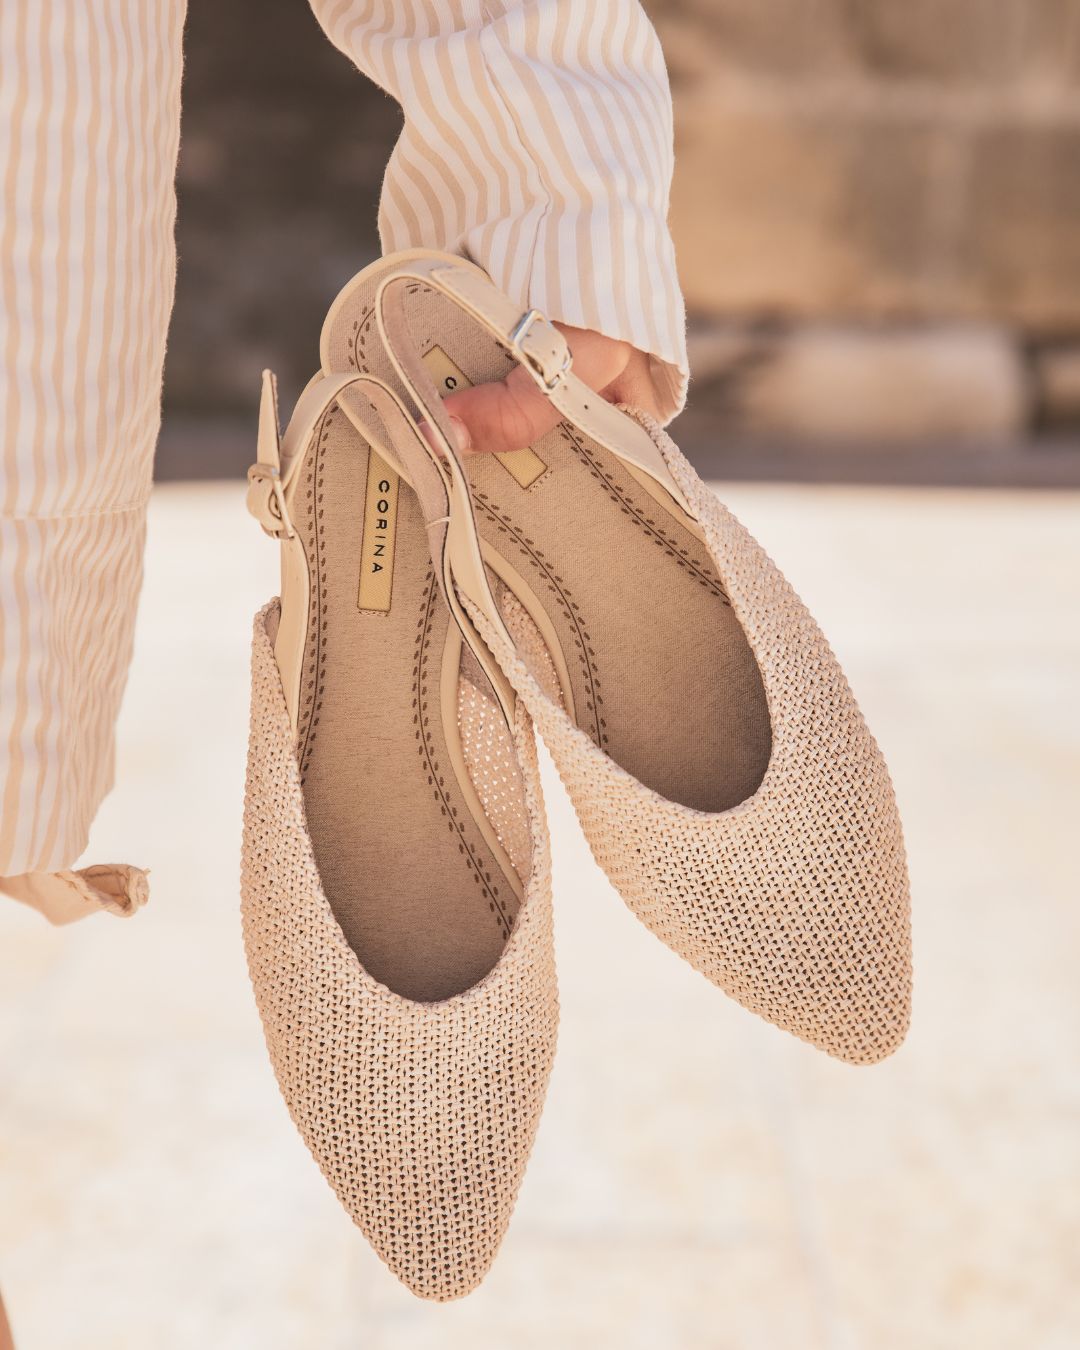 Sandale femme plate escarpin beige - Marjorie - Casualmode.fr